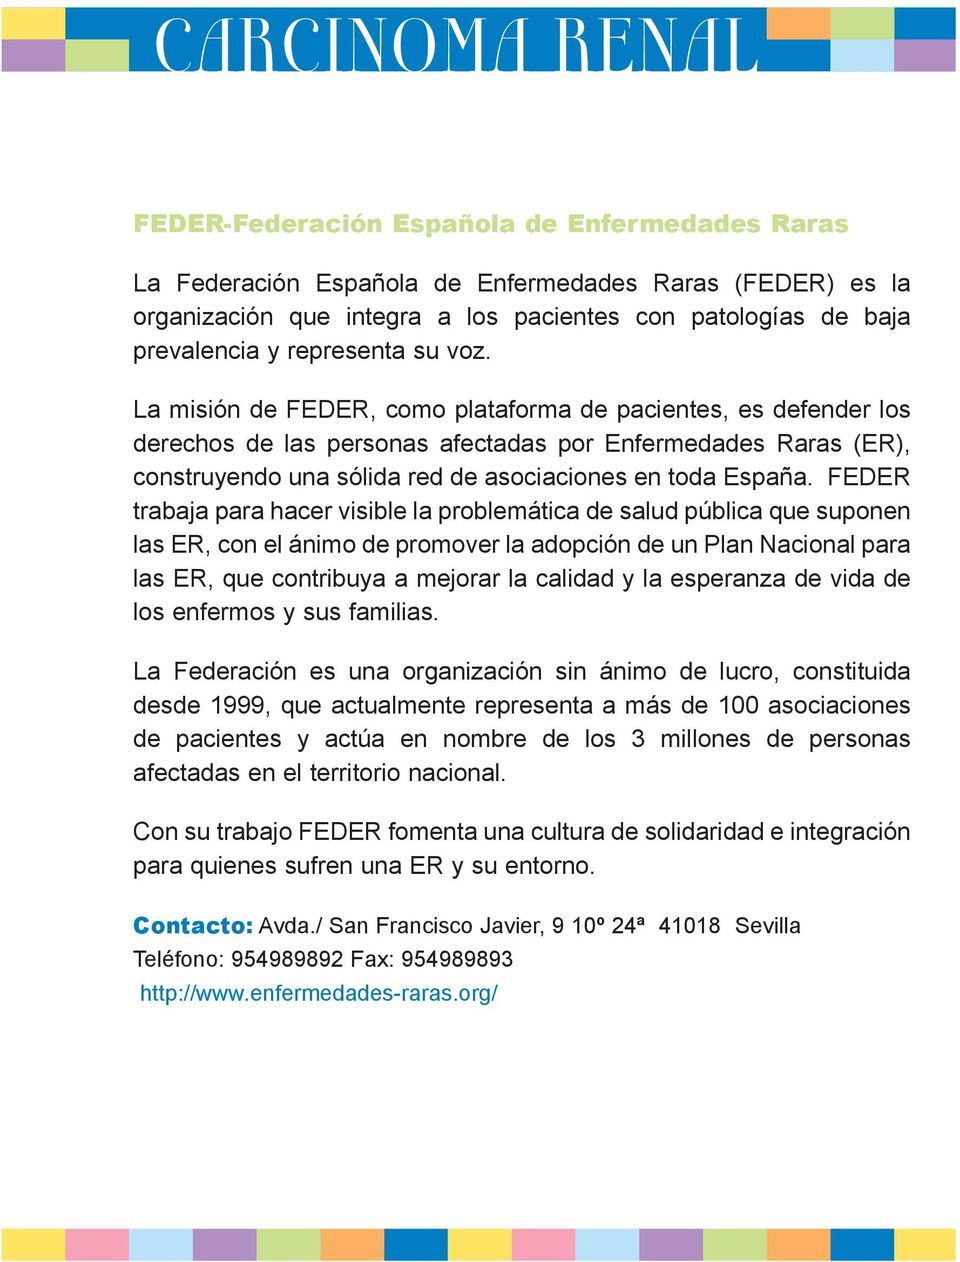 La misión de FEDER, como plataforma de pacientes, es defender los derechos de las personas afectadas por Enfermedades Raras (ER), construyendo una sólida red de asociaciones en toda España.